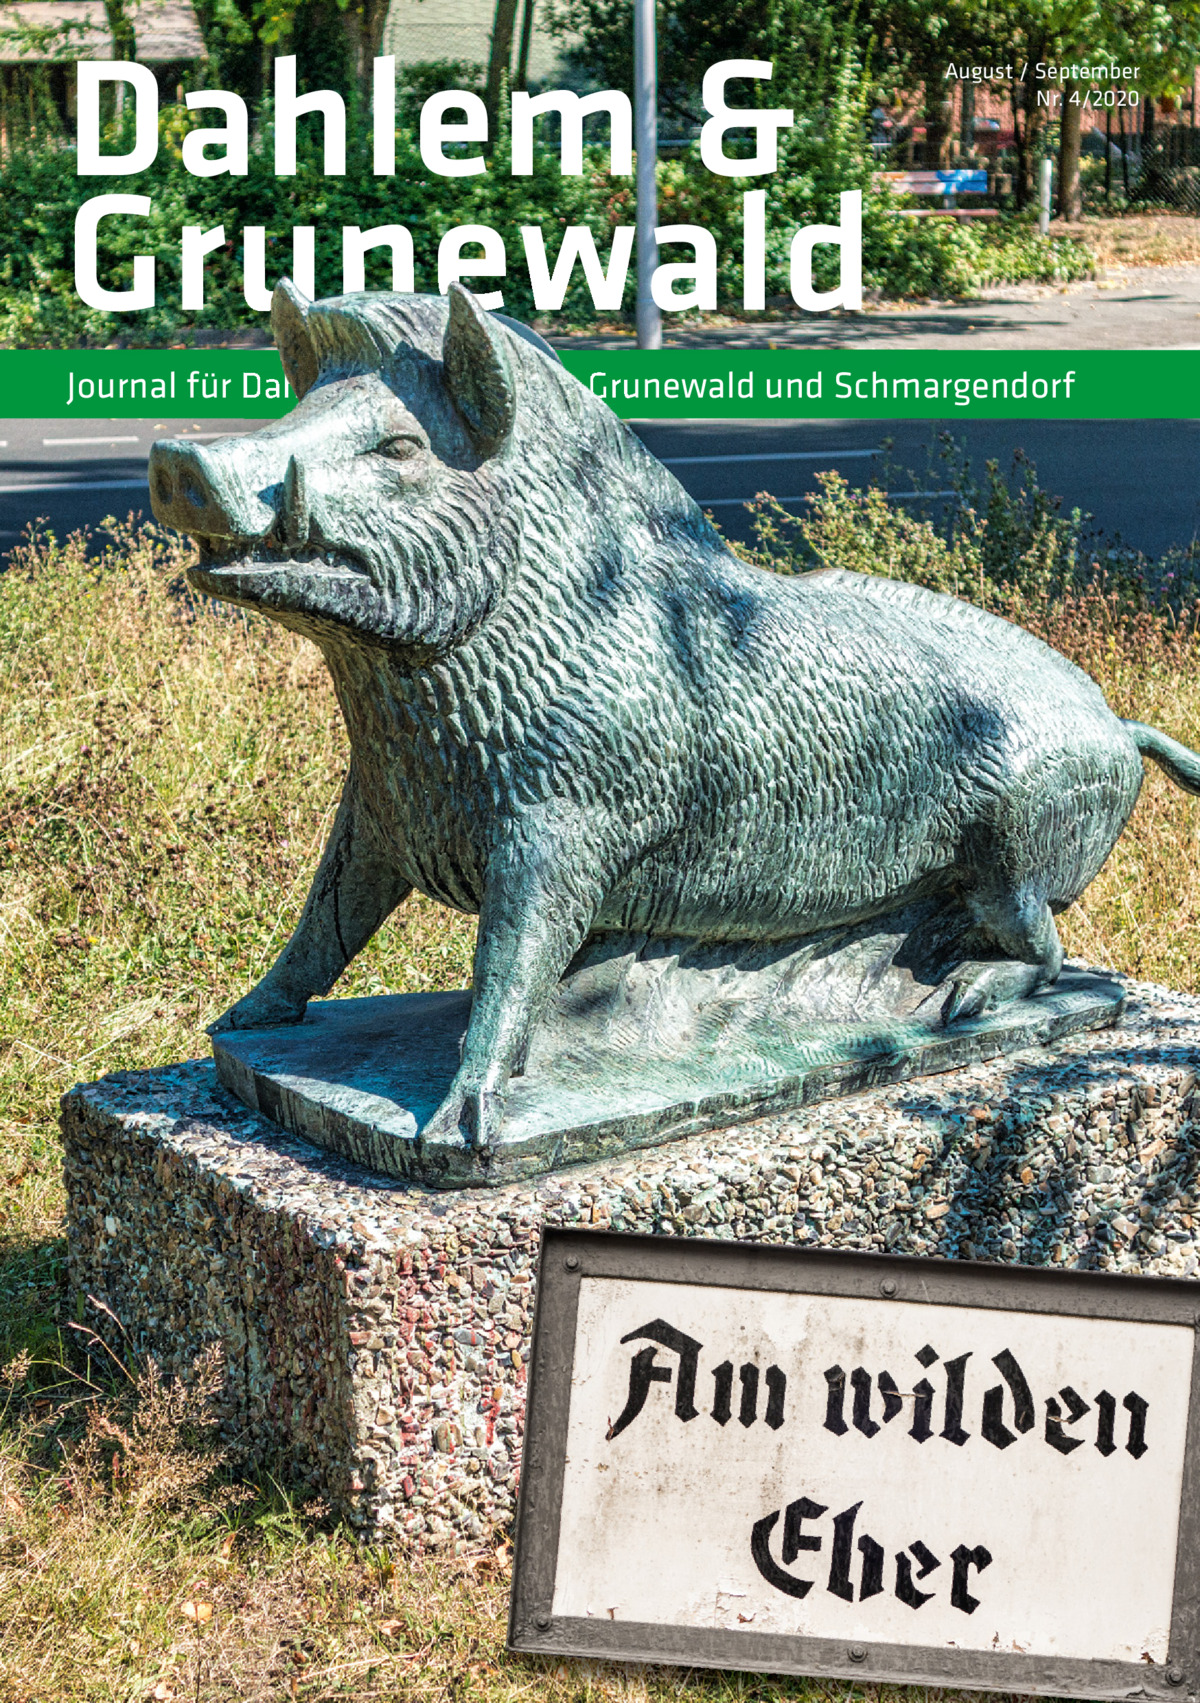 Dahlem & Grunewald Journal für Dahlem,  August / September Nr. 4/2020  Grunewald und Schmargendorf